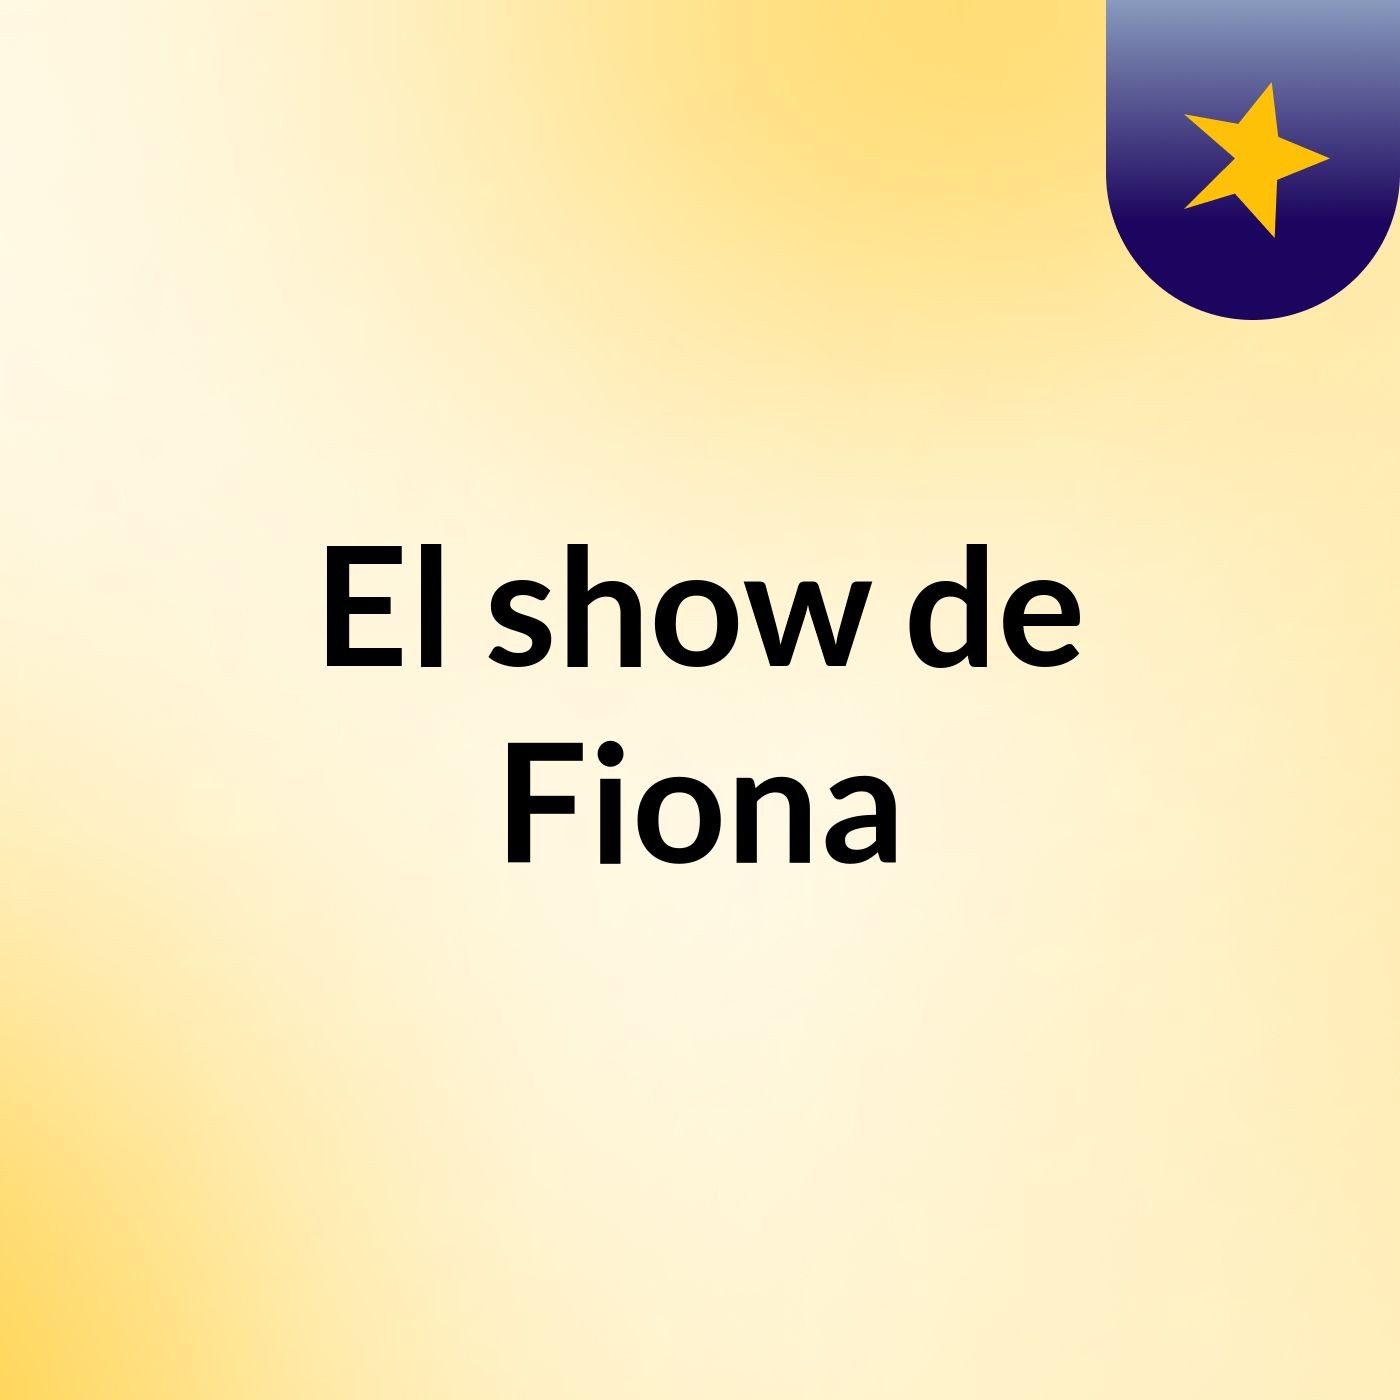 El show de Fiona